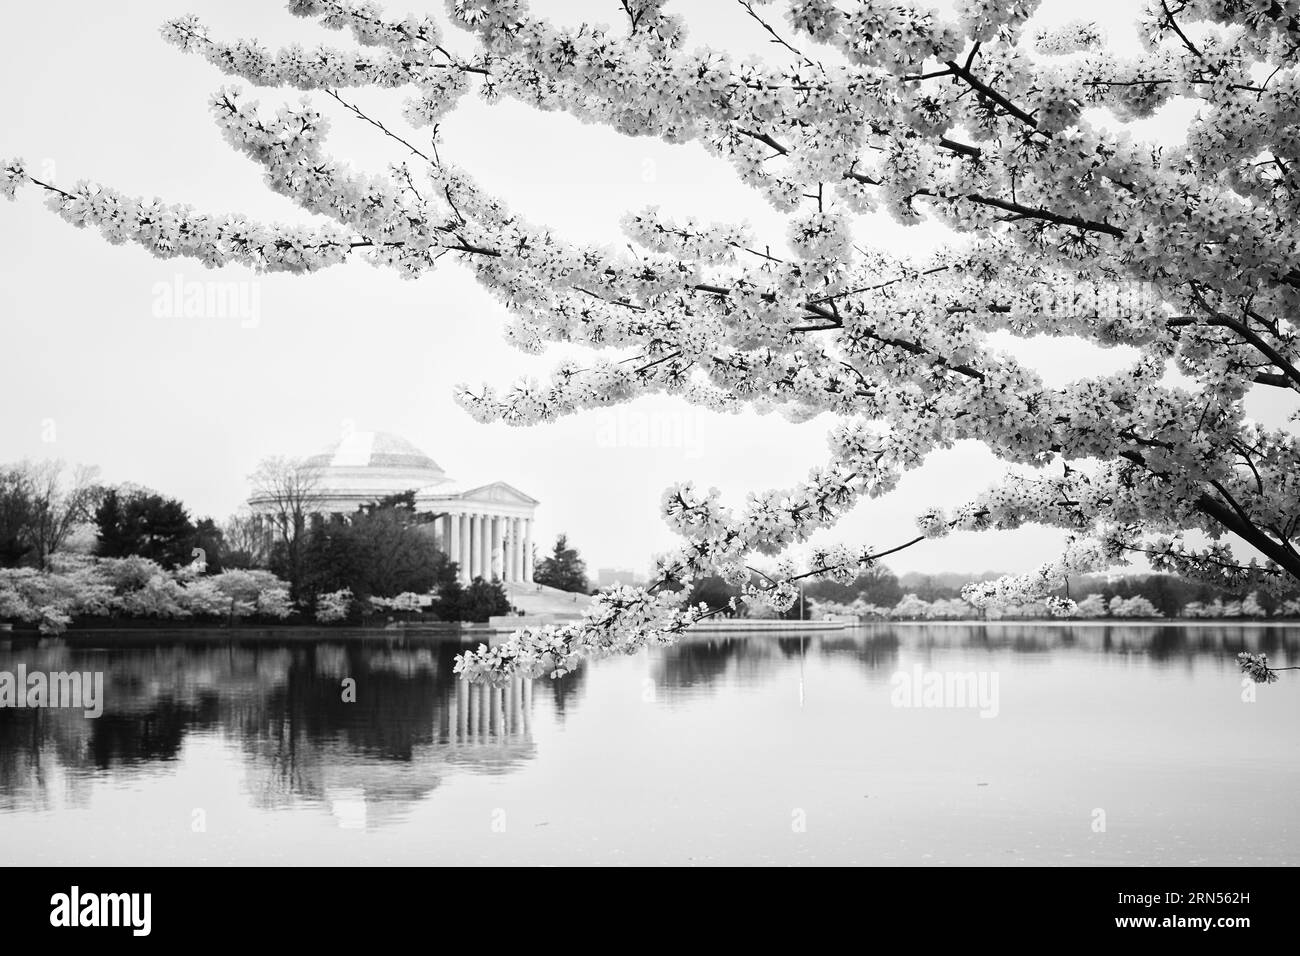 WASHINGTON DC, États-Unis — le Jefferson Memorial est entouré de fleurs de cerisier vibrantes, marquant l'arrivée du printemps dans la capitale. Ces fleurs, un cadeau du Japon en 1912, offrent un cadre pittoresque au mémorial dédié au troisième président américain, Thomas Jefferson, soulignant la fusion de la beauté naturelle et de l'histoire américaine. Banque D'Images